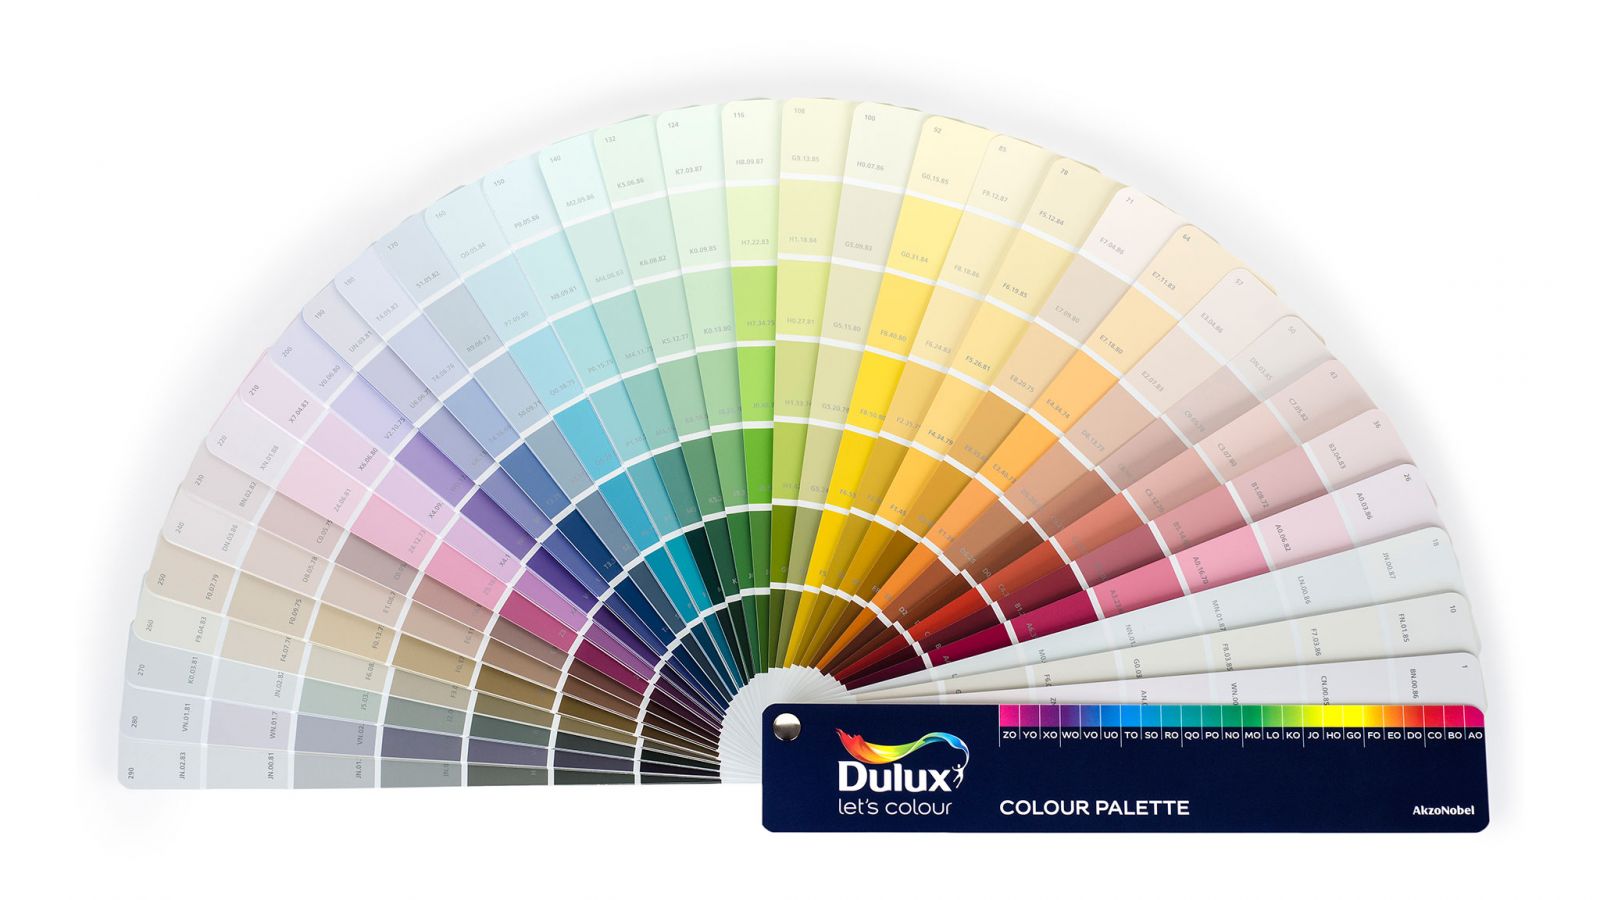 Quạt mã màu sơn Dulux mang lại lựa chọn vô số màu sắc đa dạng để bạn chọn cho không gian sống của mình. Với bảng màu sáng tạo, bạn có thể thấy được cách màu sắc và hoa văn khác nhau hòa quyện với nhau, giúp phong cách sống của bạn thêm hoàn hảo.